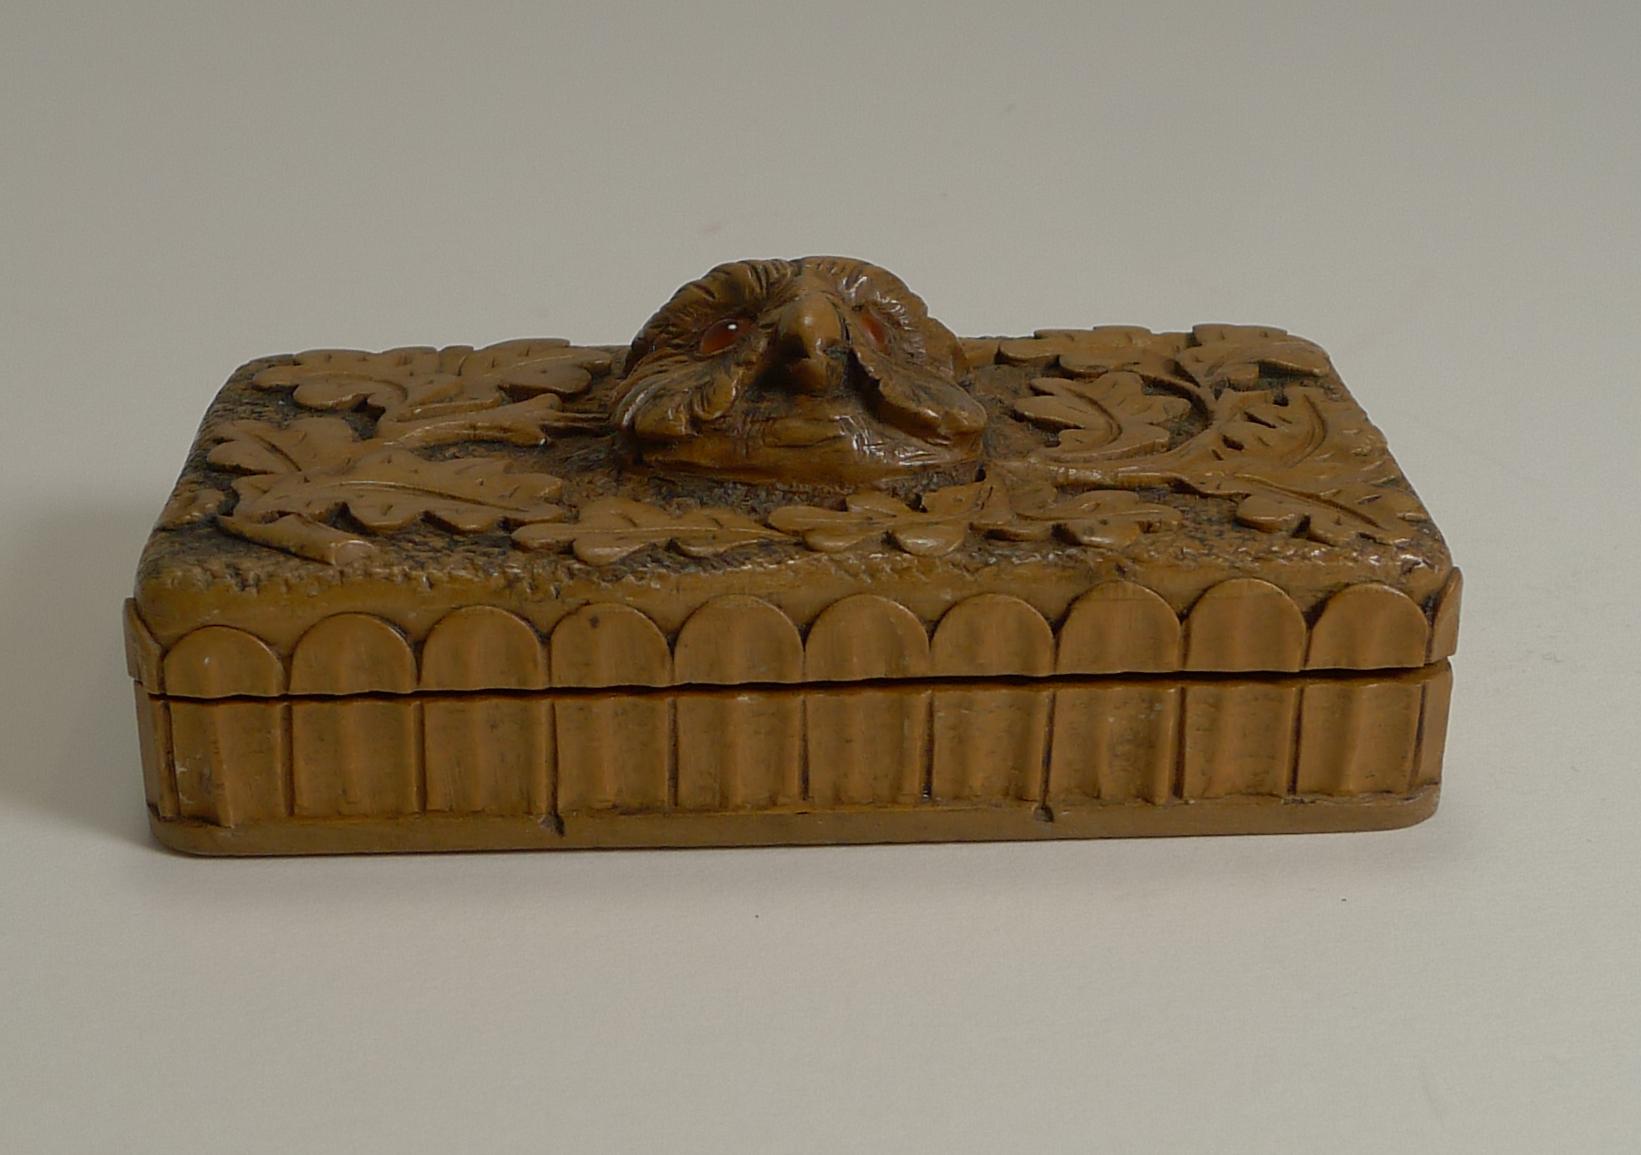 Une fabuleuse boîte de timbres-poste en bois sculpté à la main provenant de la région de la Forêt-Noire et datant d'environ 1900.

Les côtés sont sculptés mais la star du spectacle est la chouette sculptée au centre du couvercle, entourée de